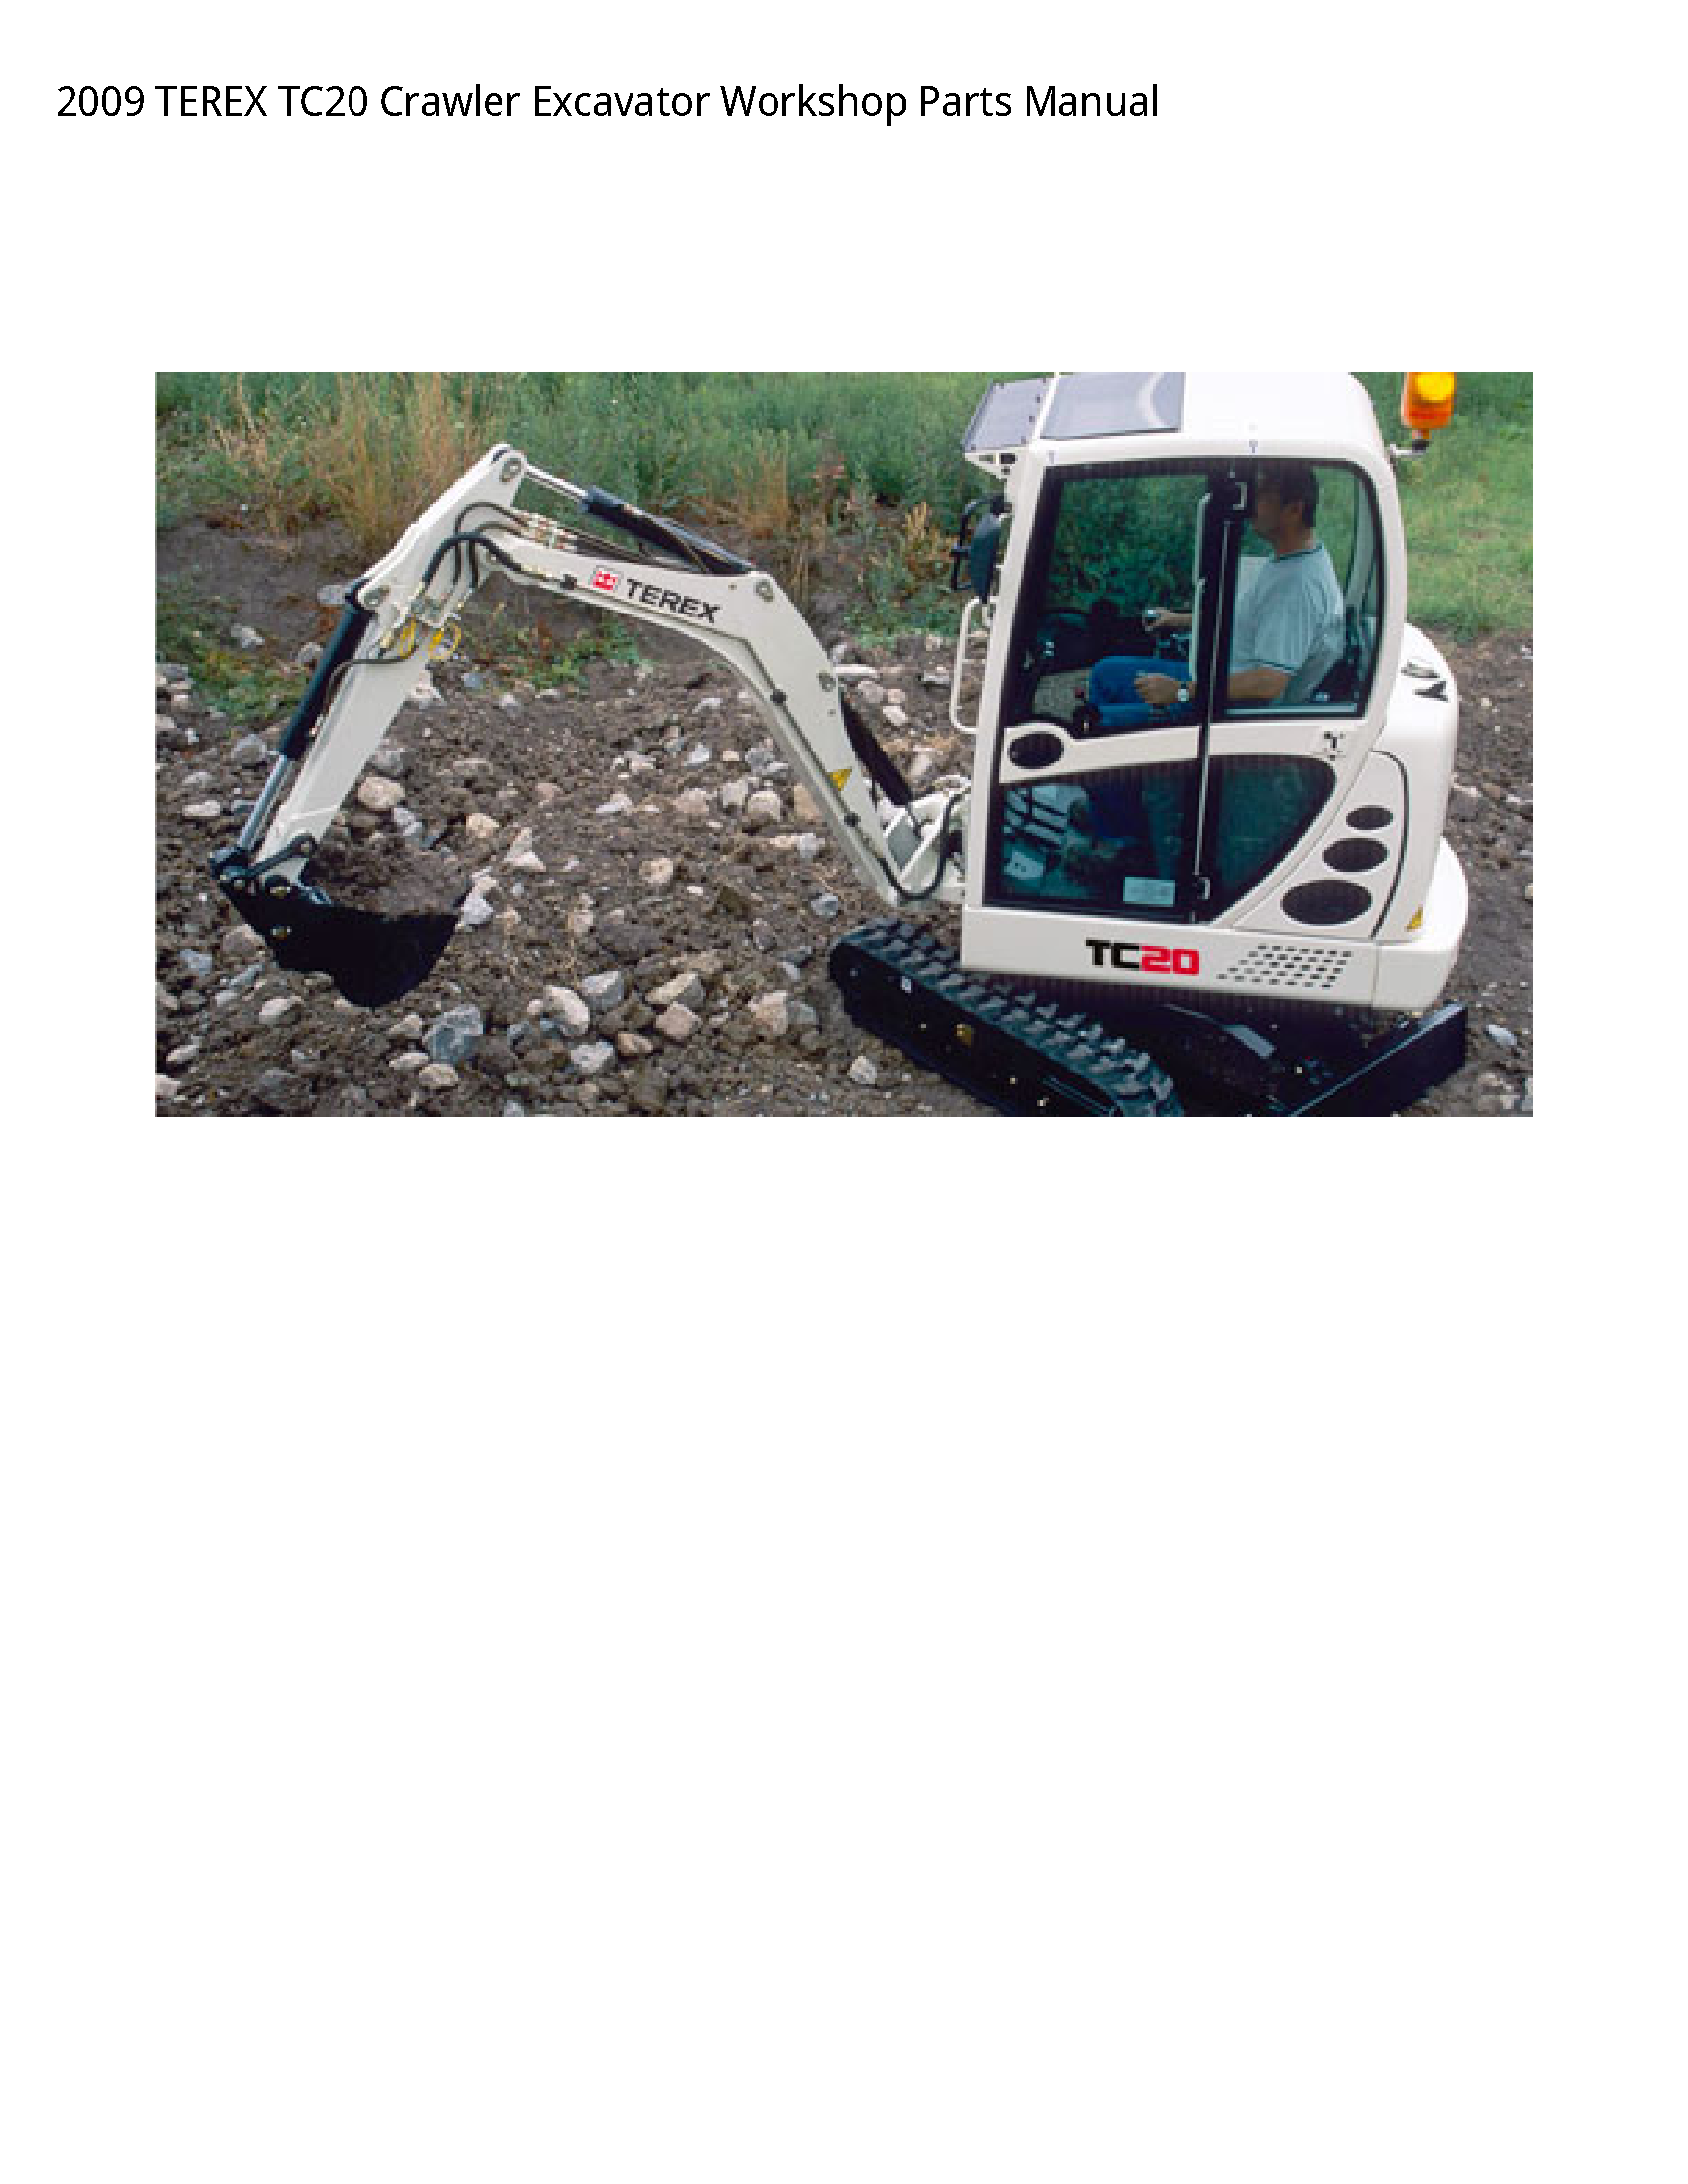 Terex TC20 Crawler Excavator Parts manual